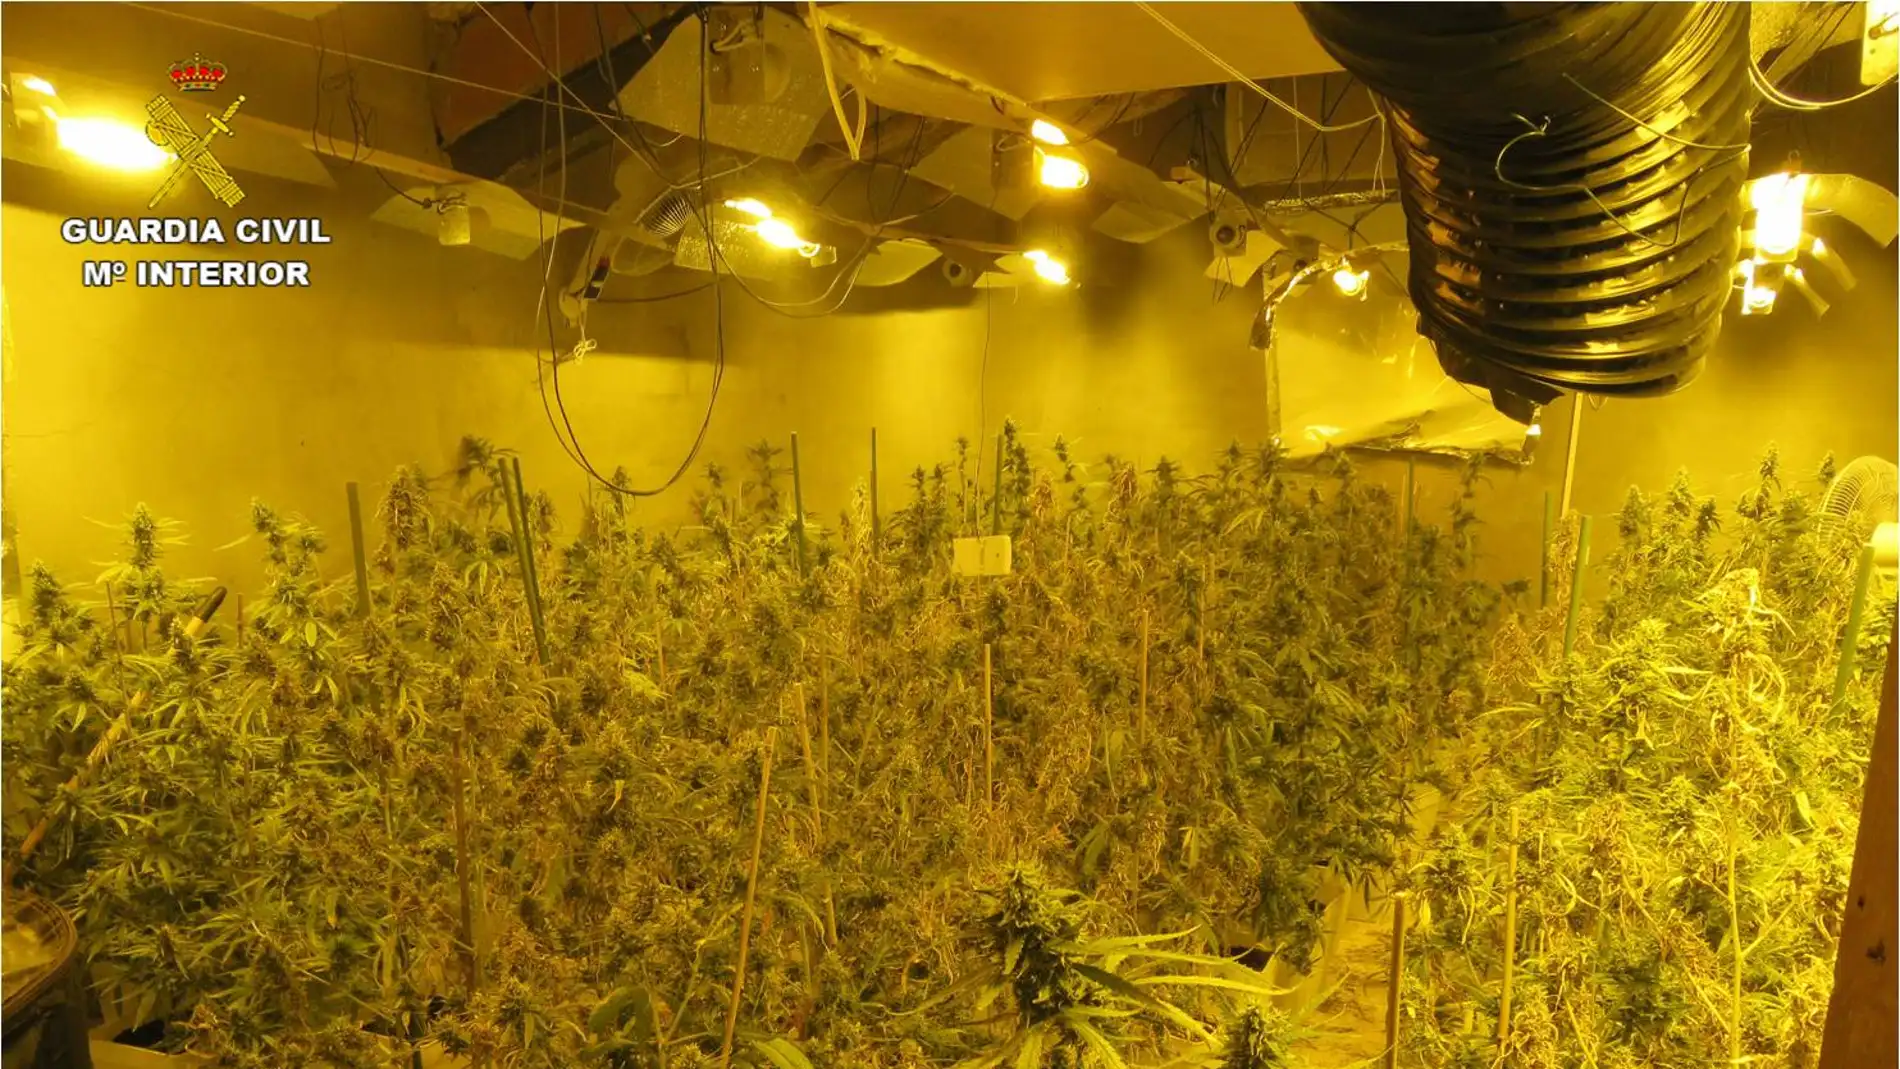 Plantación de marihuana desmantelada por la Guardia Civil en Villena.